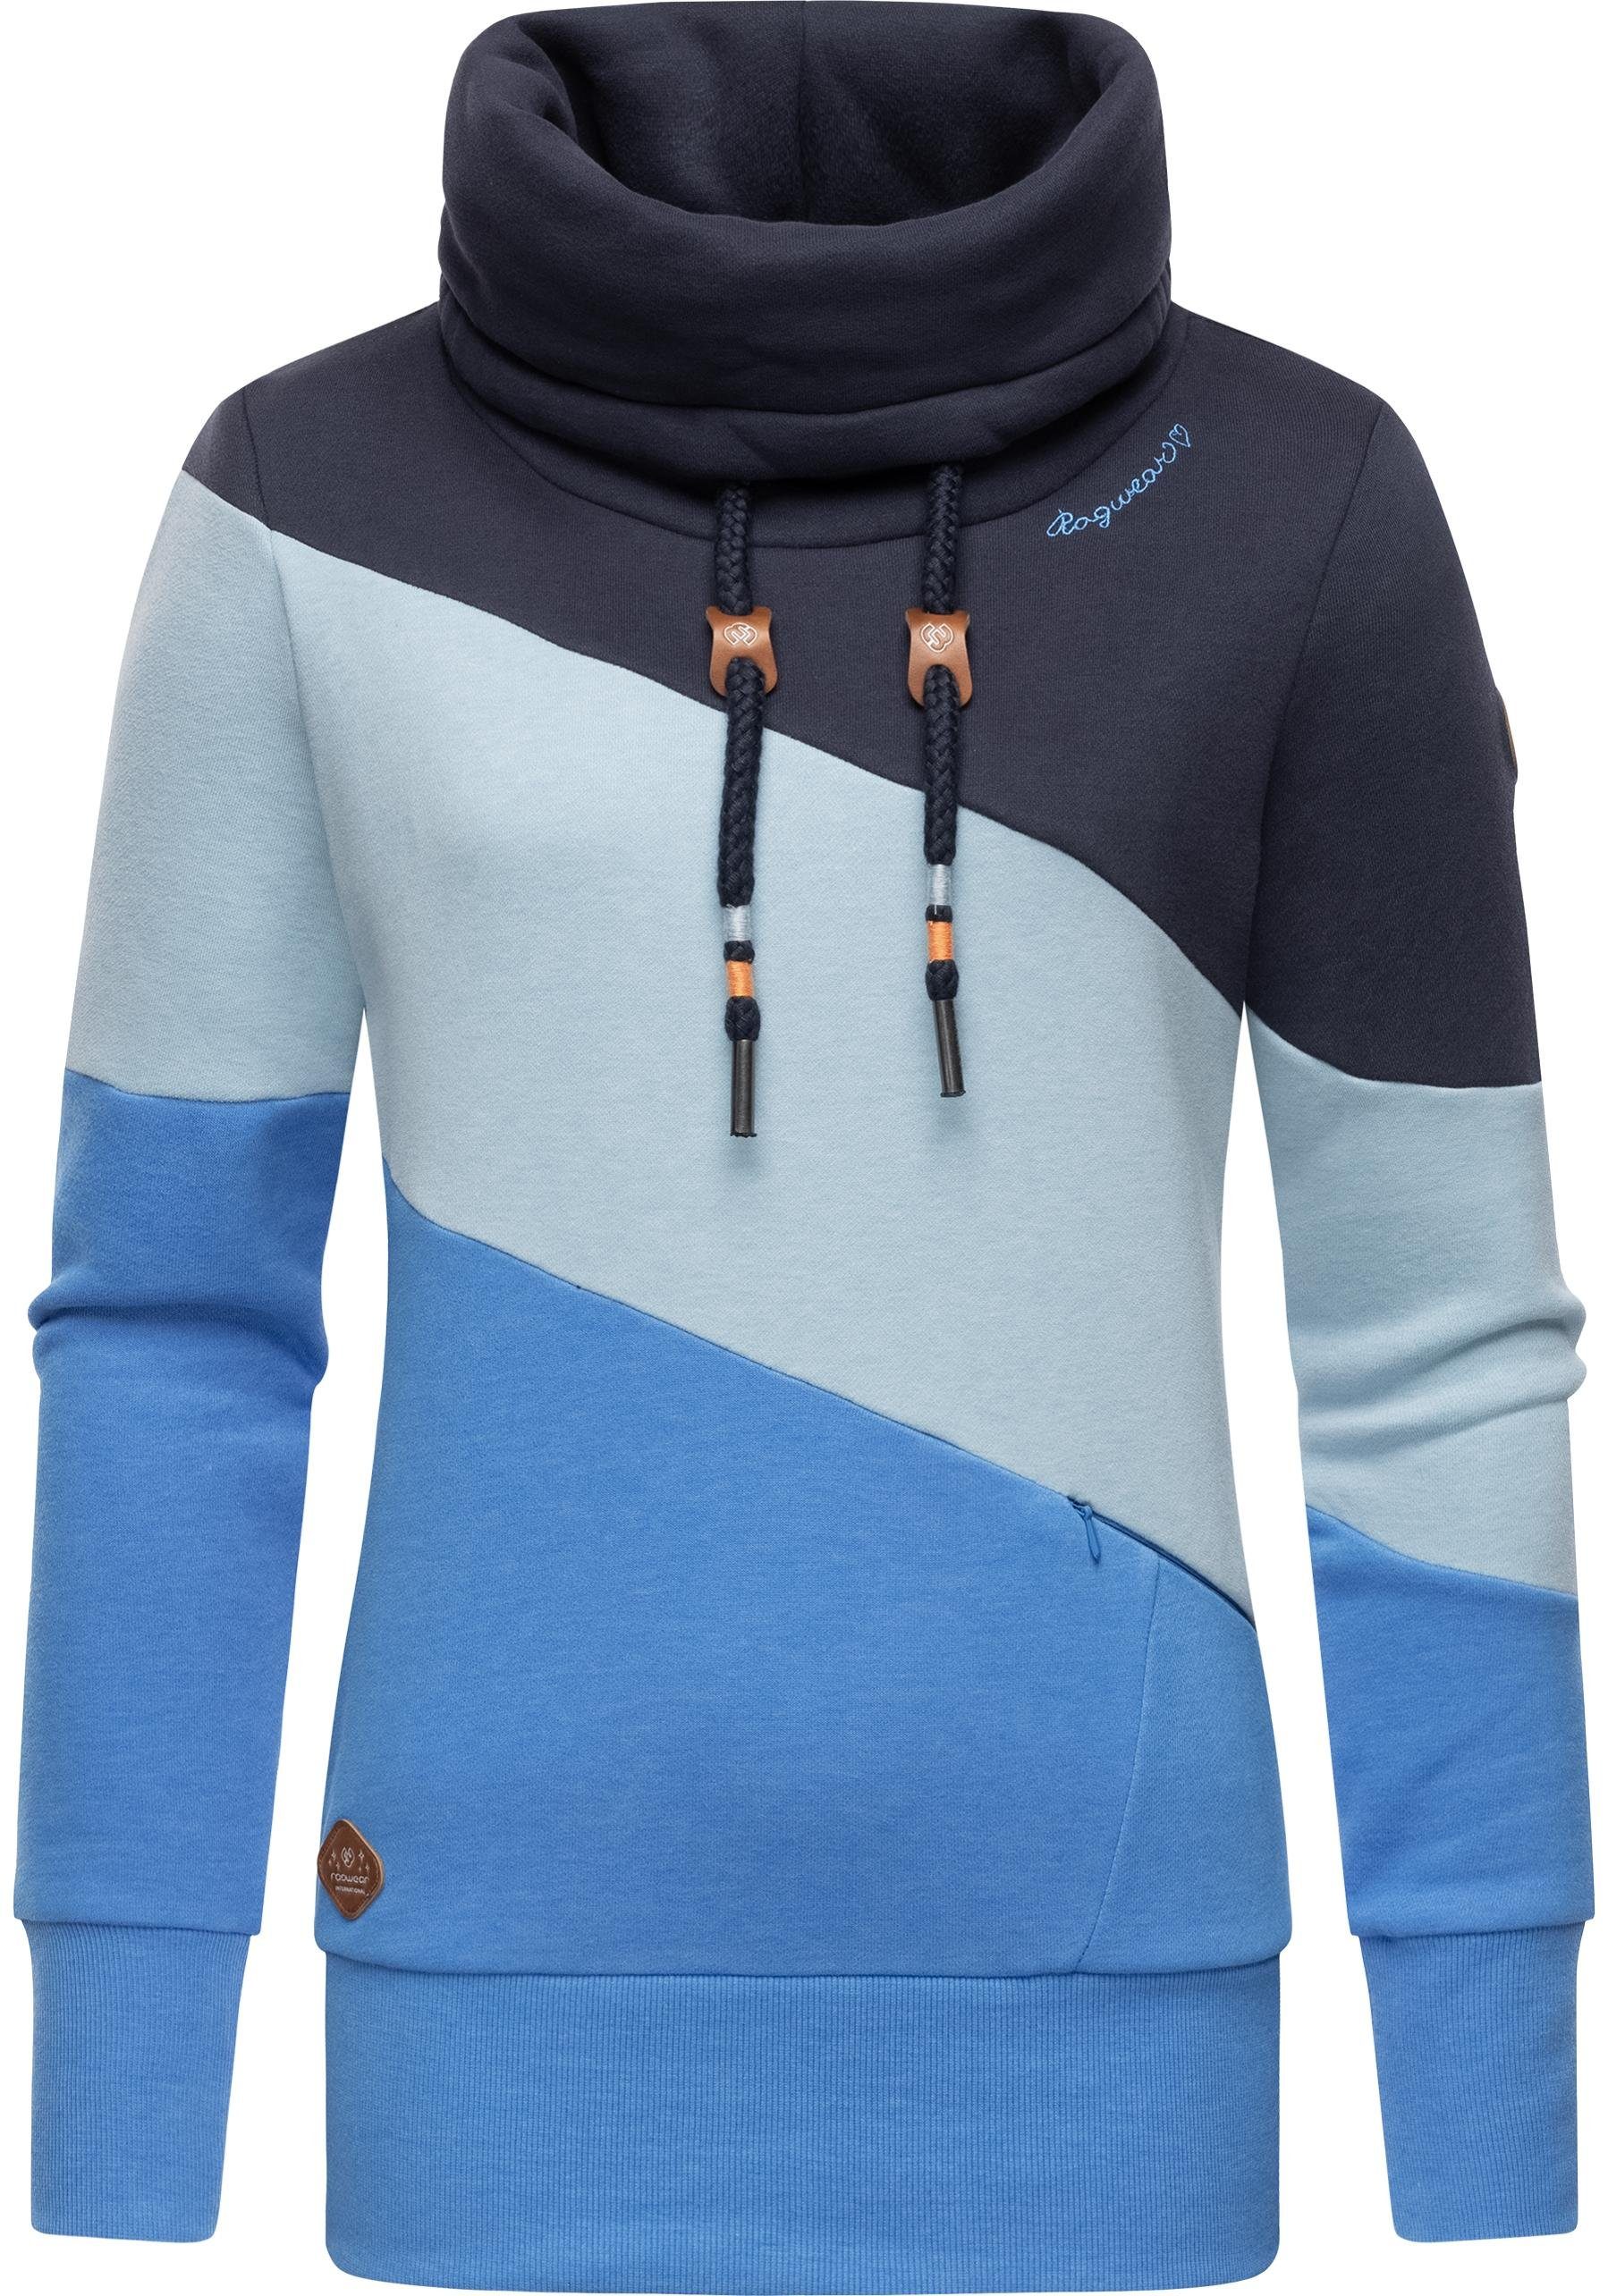 Ragwear Sweatshirt Rumika modischer Longsleeve Pullover mit Schlauchkragen blau